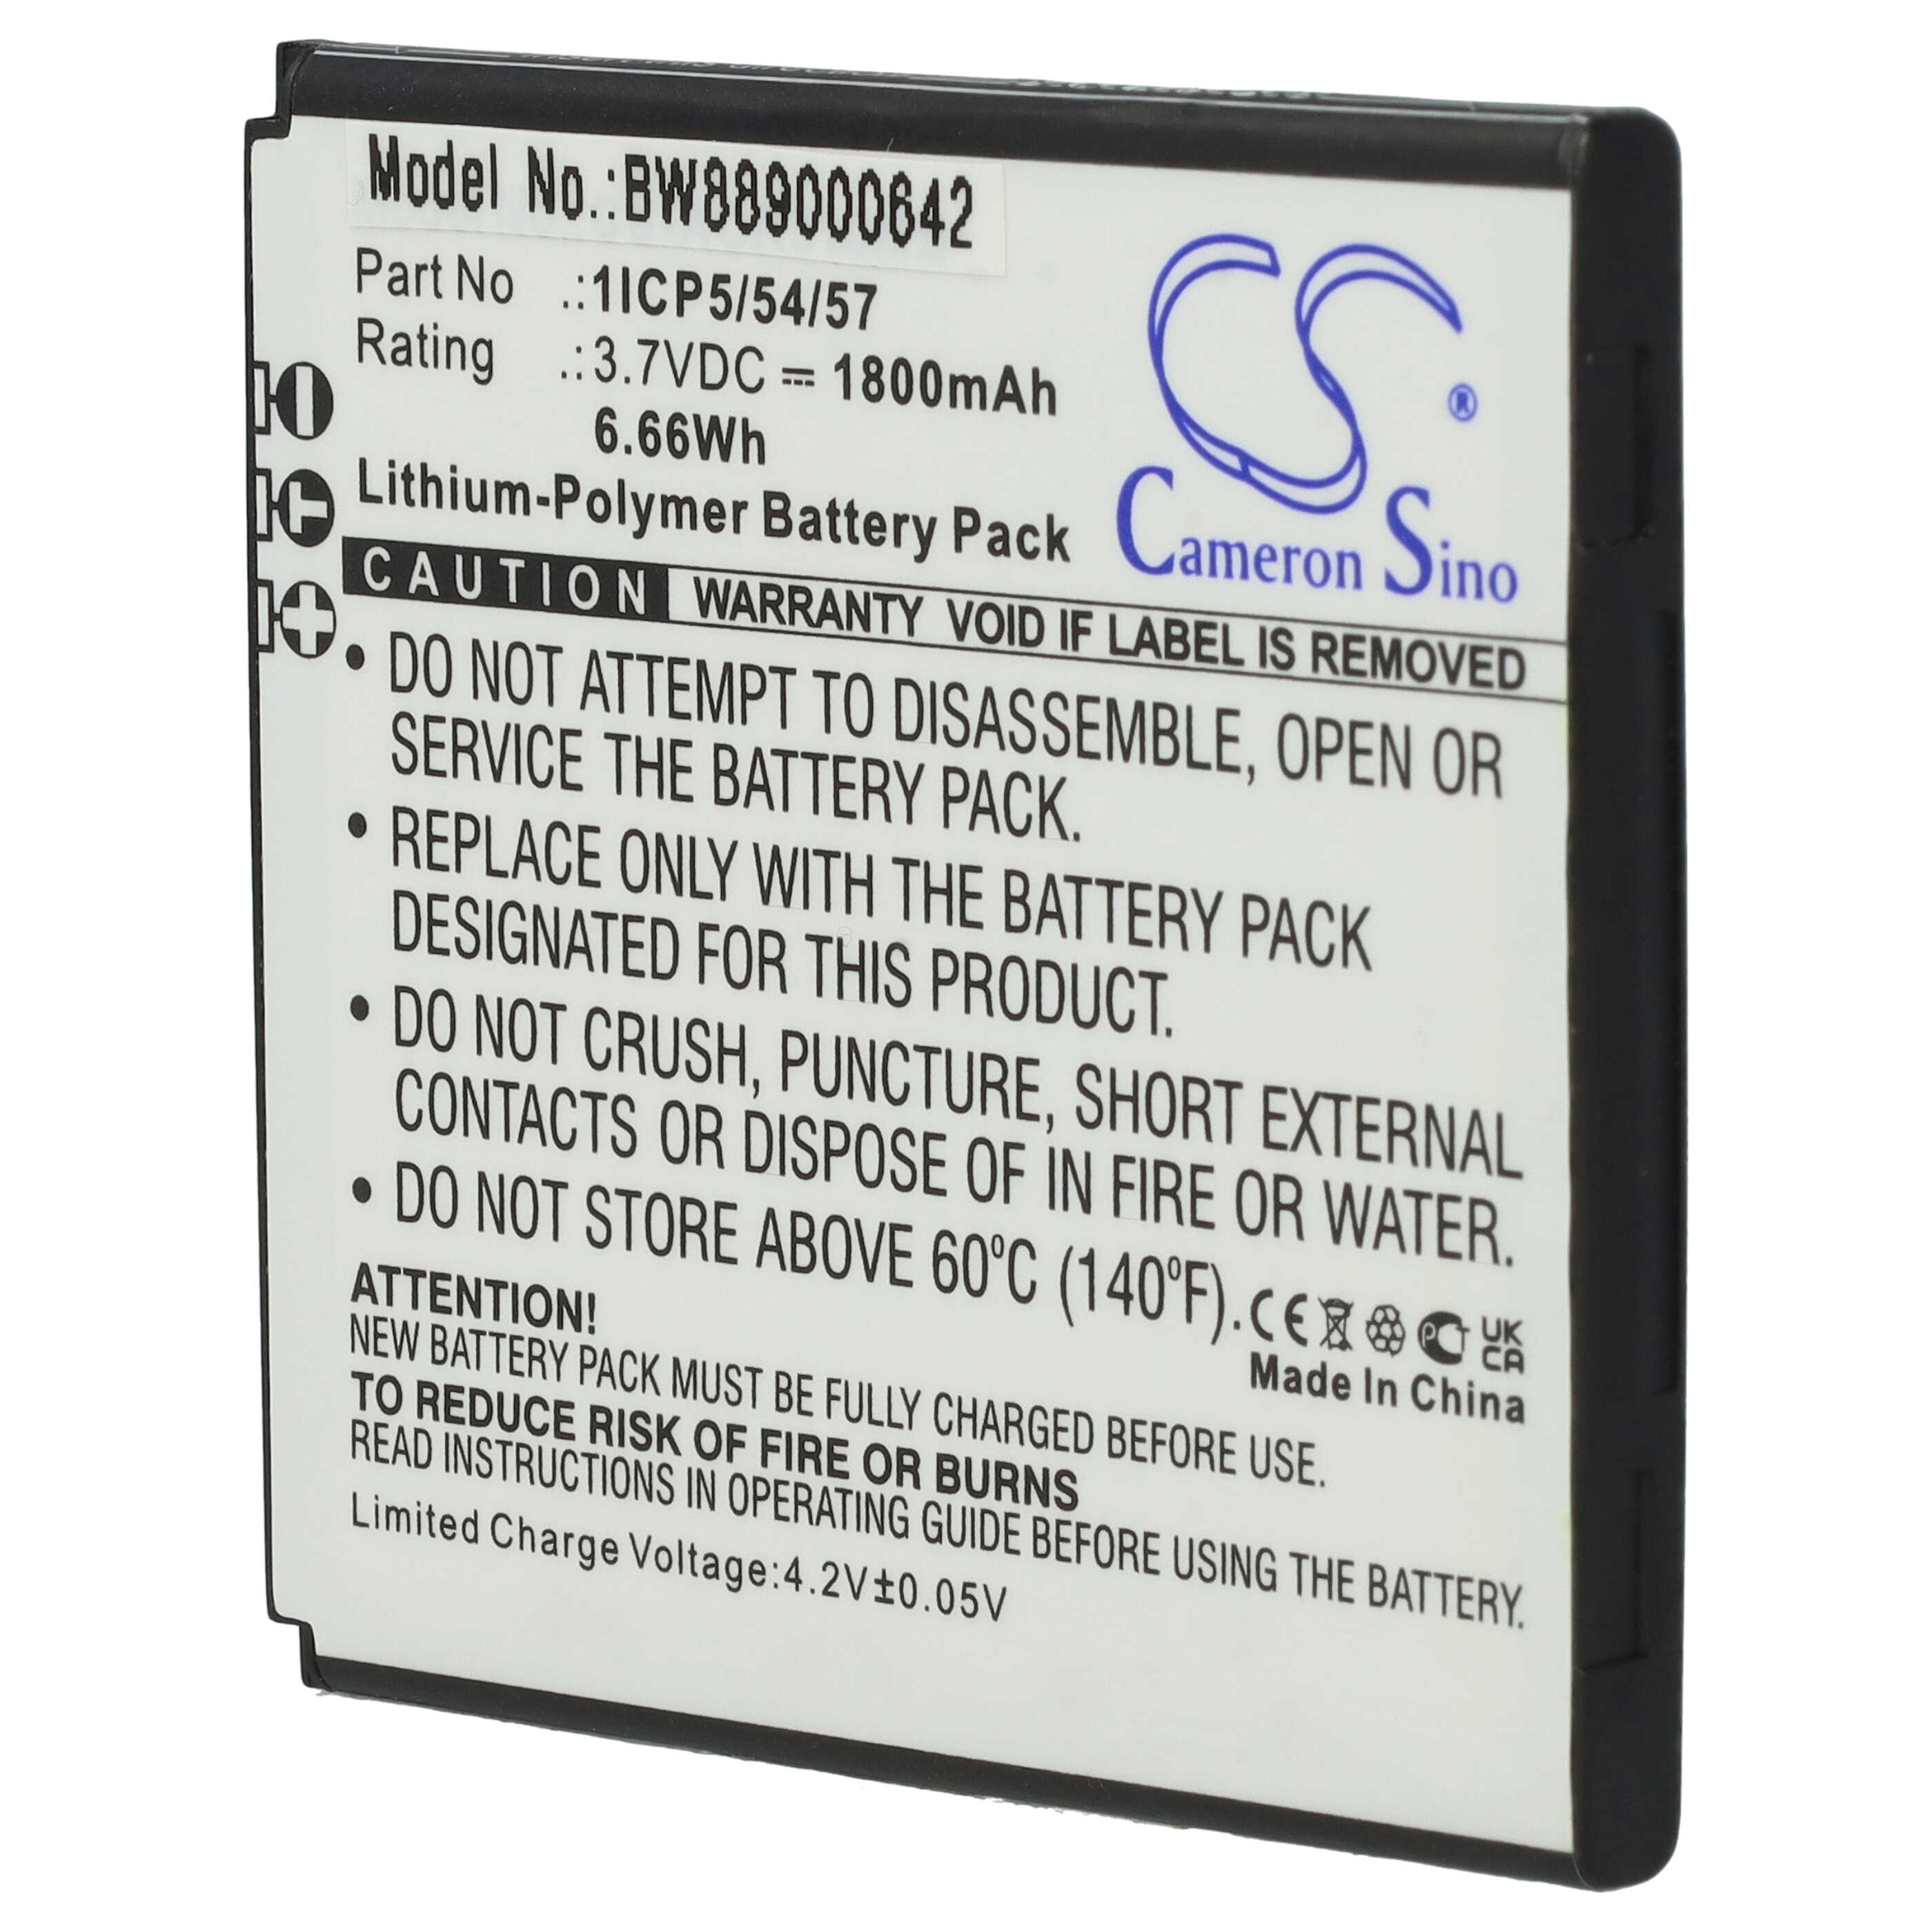 Batterie remplace Angelcare 1ICP5/54/57 pour moniteur bébé - 1800mAh 3,7V Li-polymère